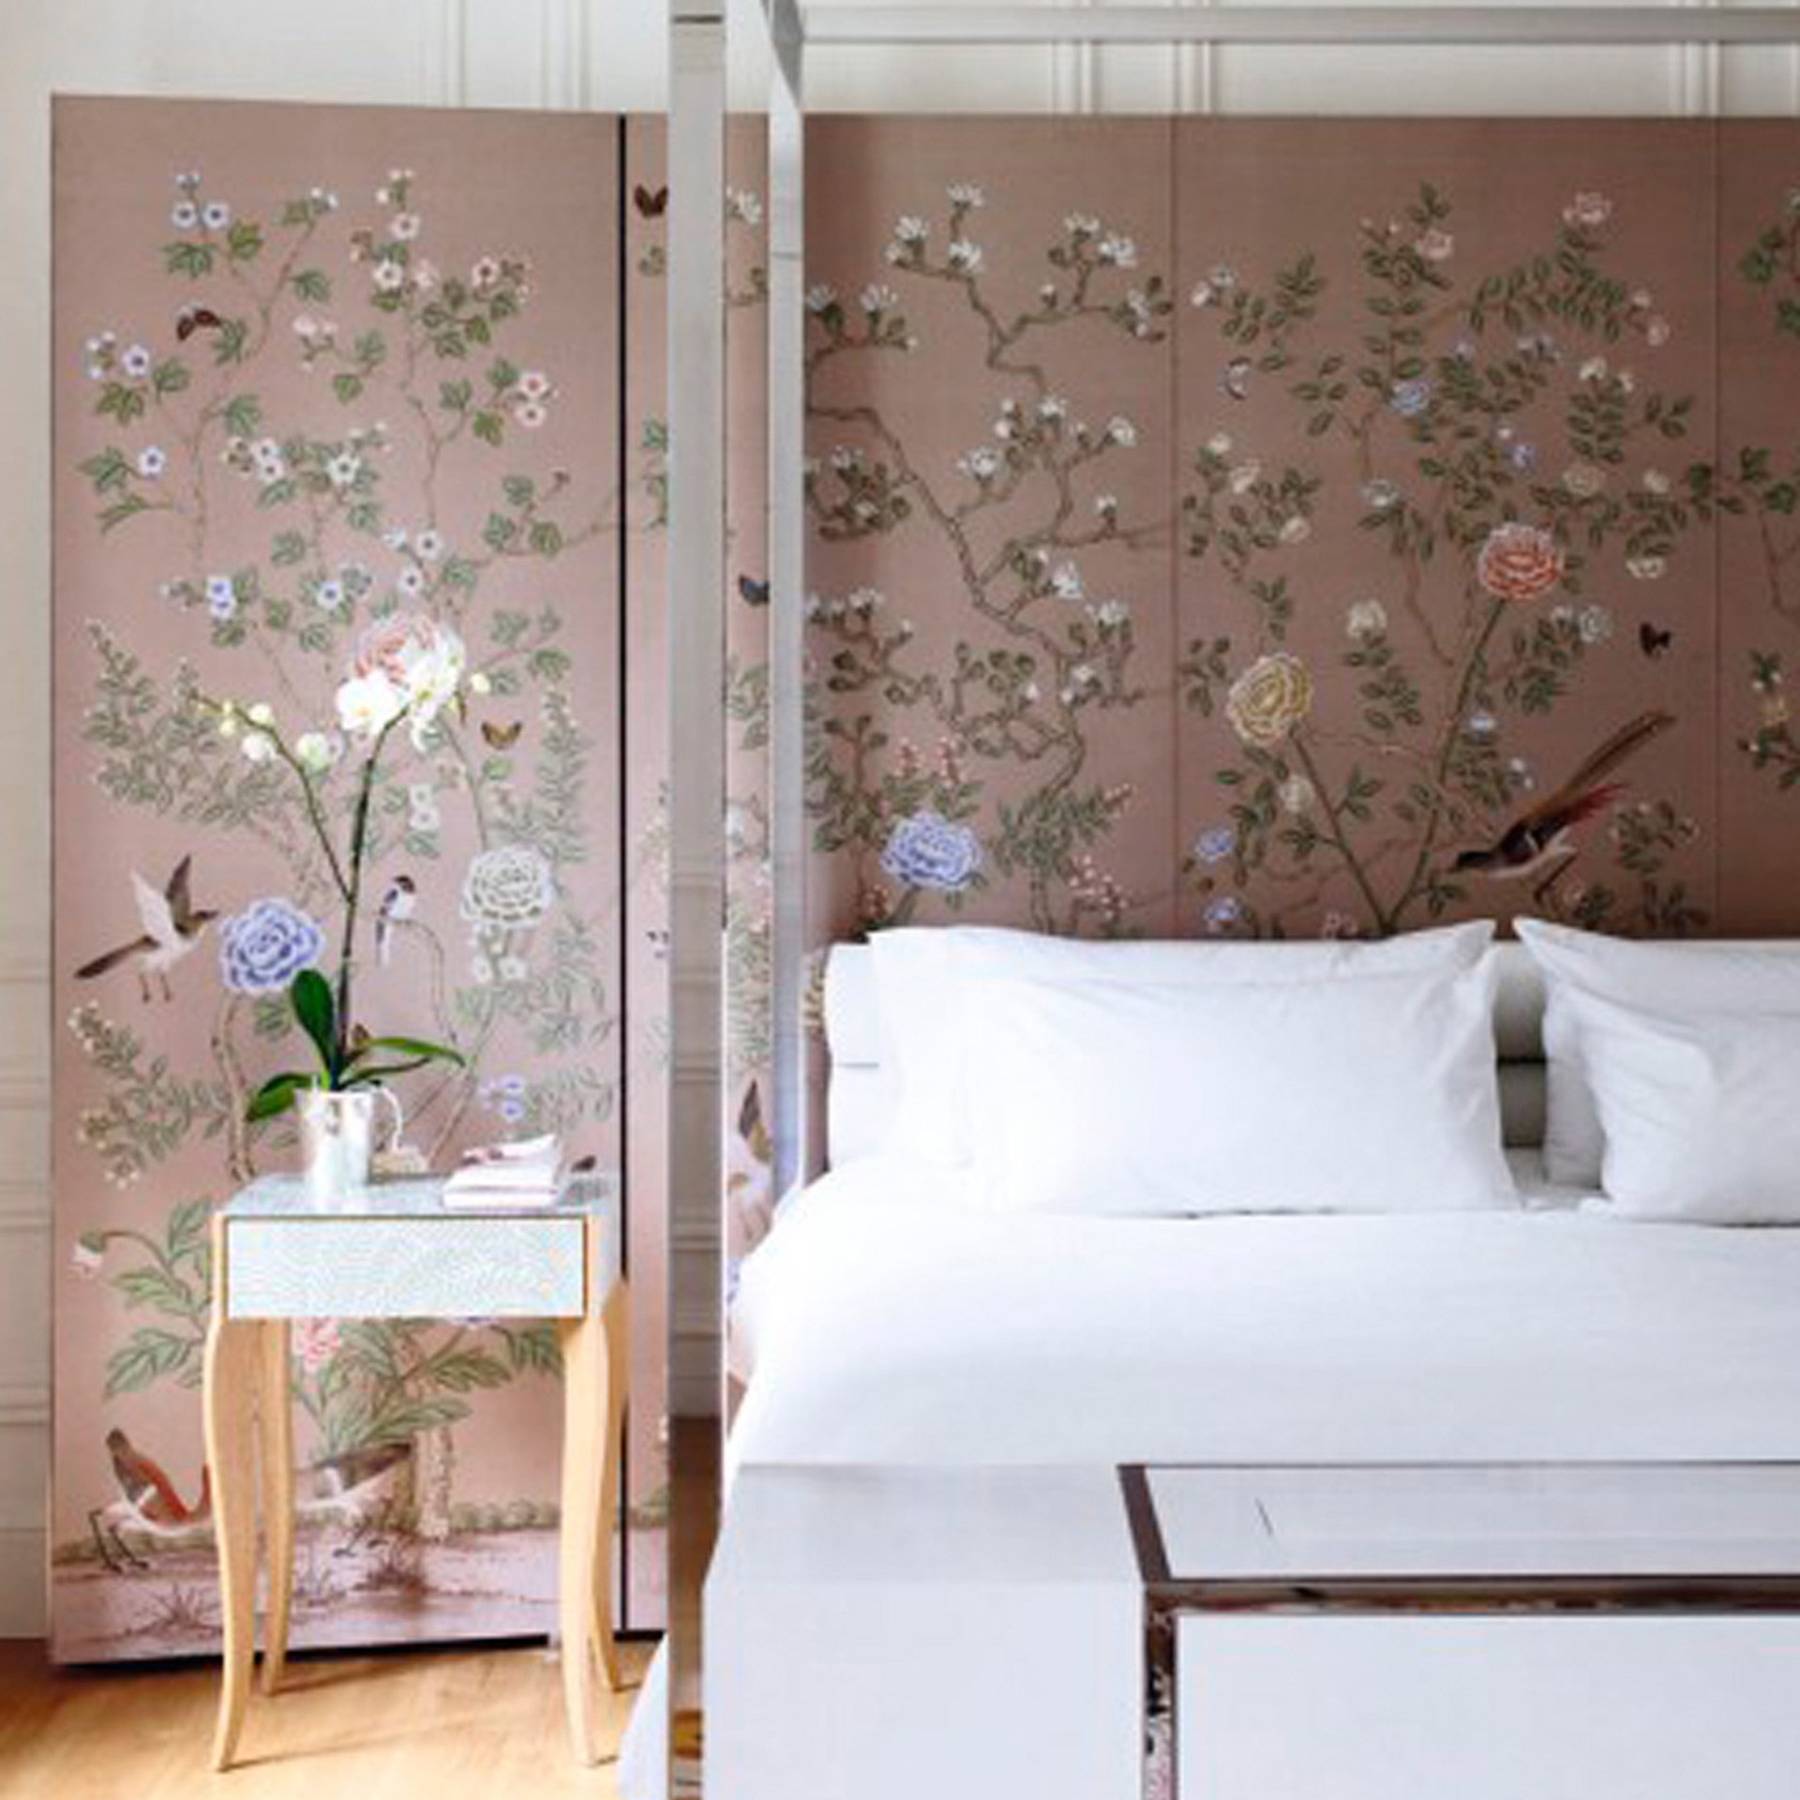 Chinoiserie Wallpaper Fabric Design Decor Ideas House Garden